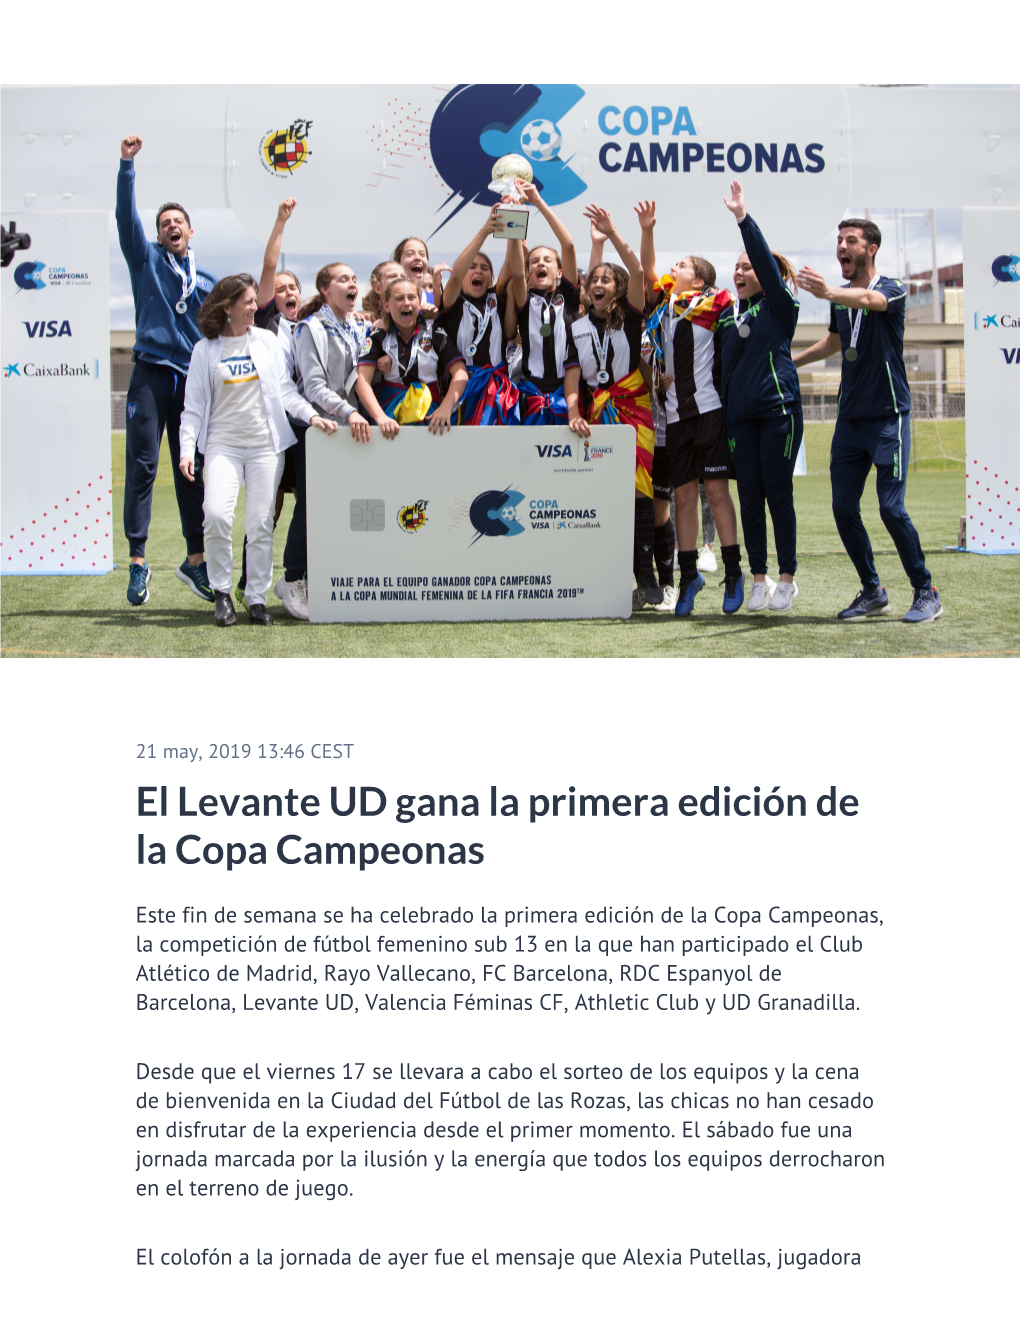 El Levante UD Gana La Primera Edición De La Copa Campeonas